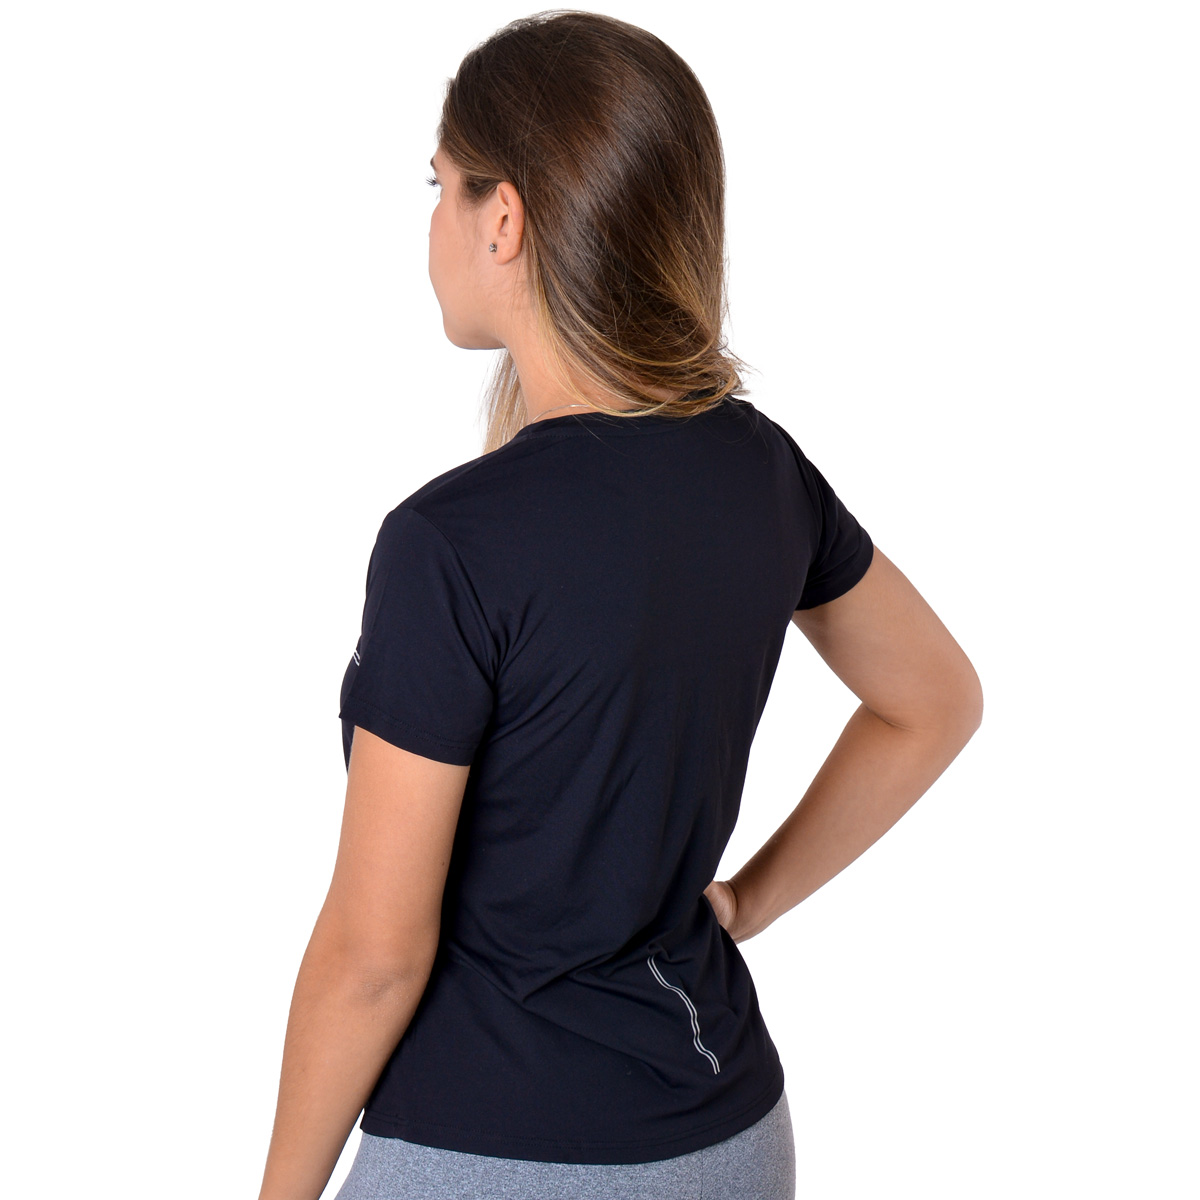 Camiseta para academia e corrida com proteção solar feminina Lupo .